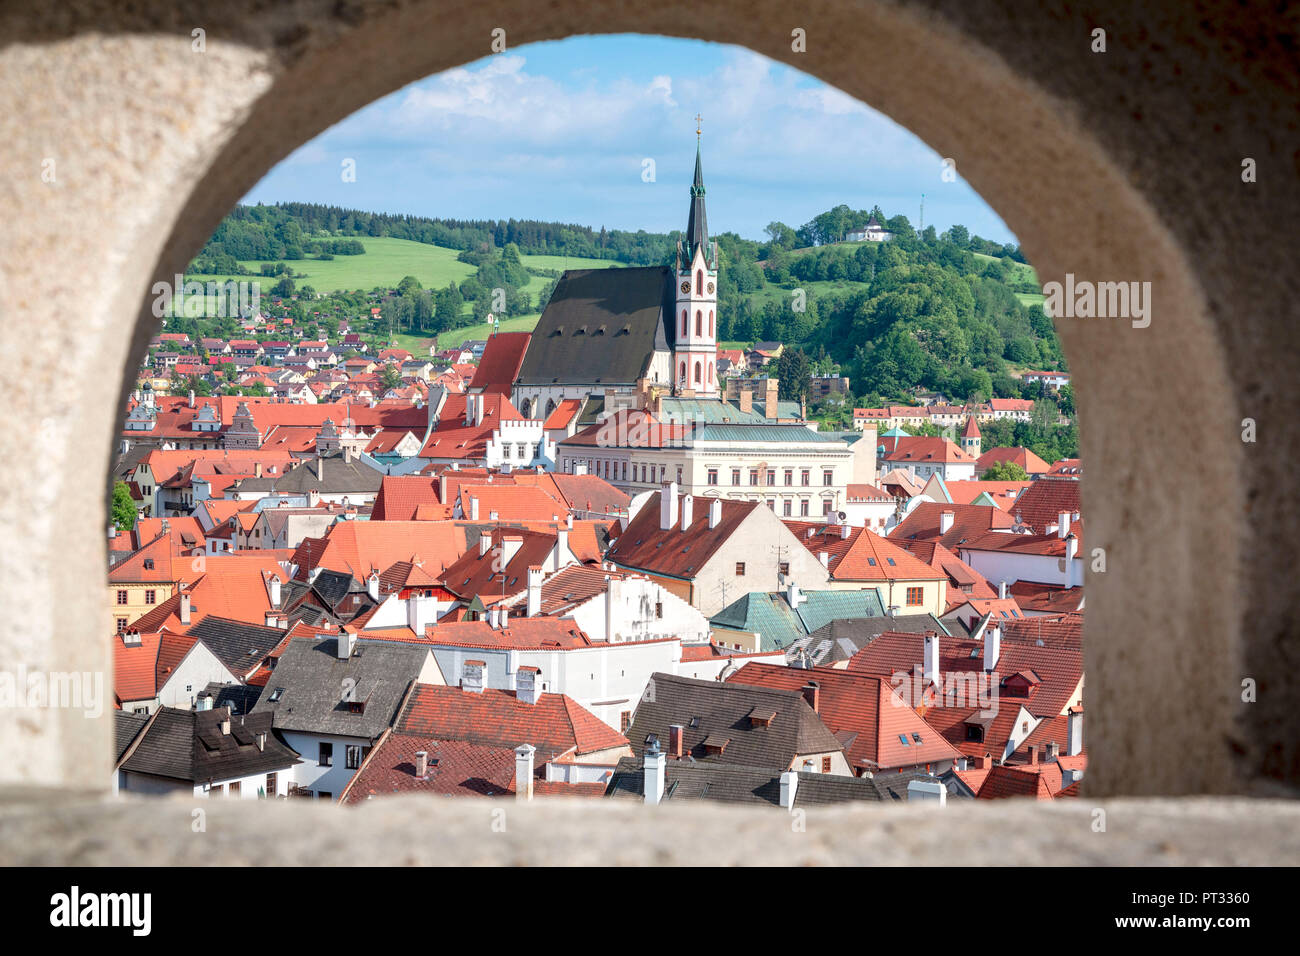 Cesky Krumlov, en el sur de Bohemia, República Checa, Europa, vista de la ciudad desde un vindow en el castillo de Krumlov Foto de stock